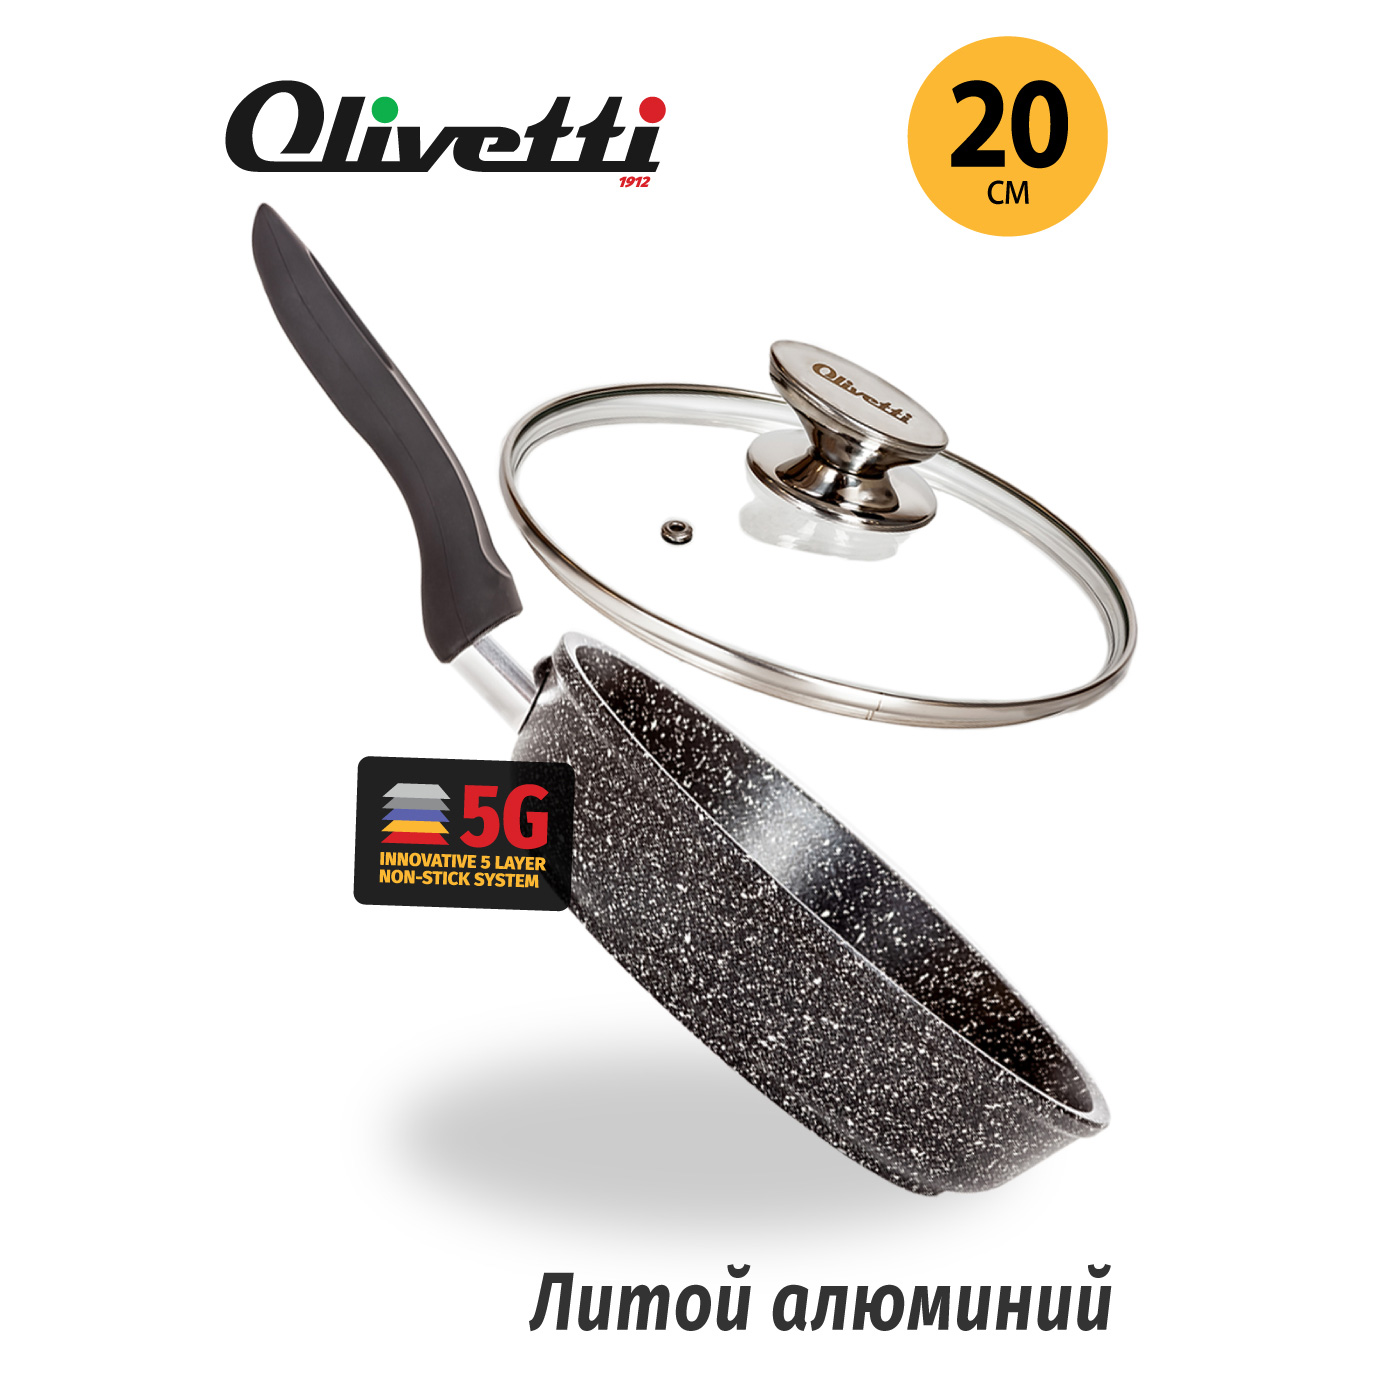 Картинка Сковорода Olivetti FP720L (20 см) по разумной цене купить в интернет магазине mall.su